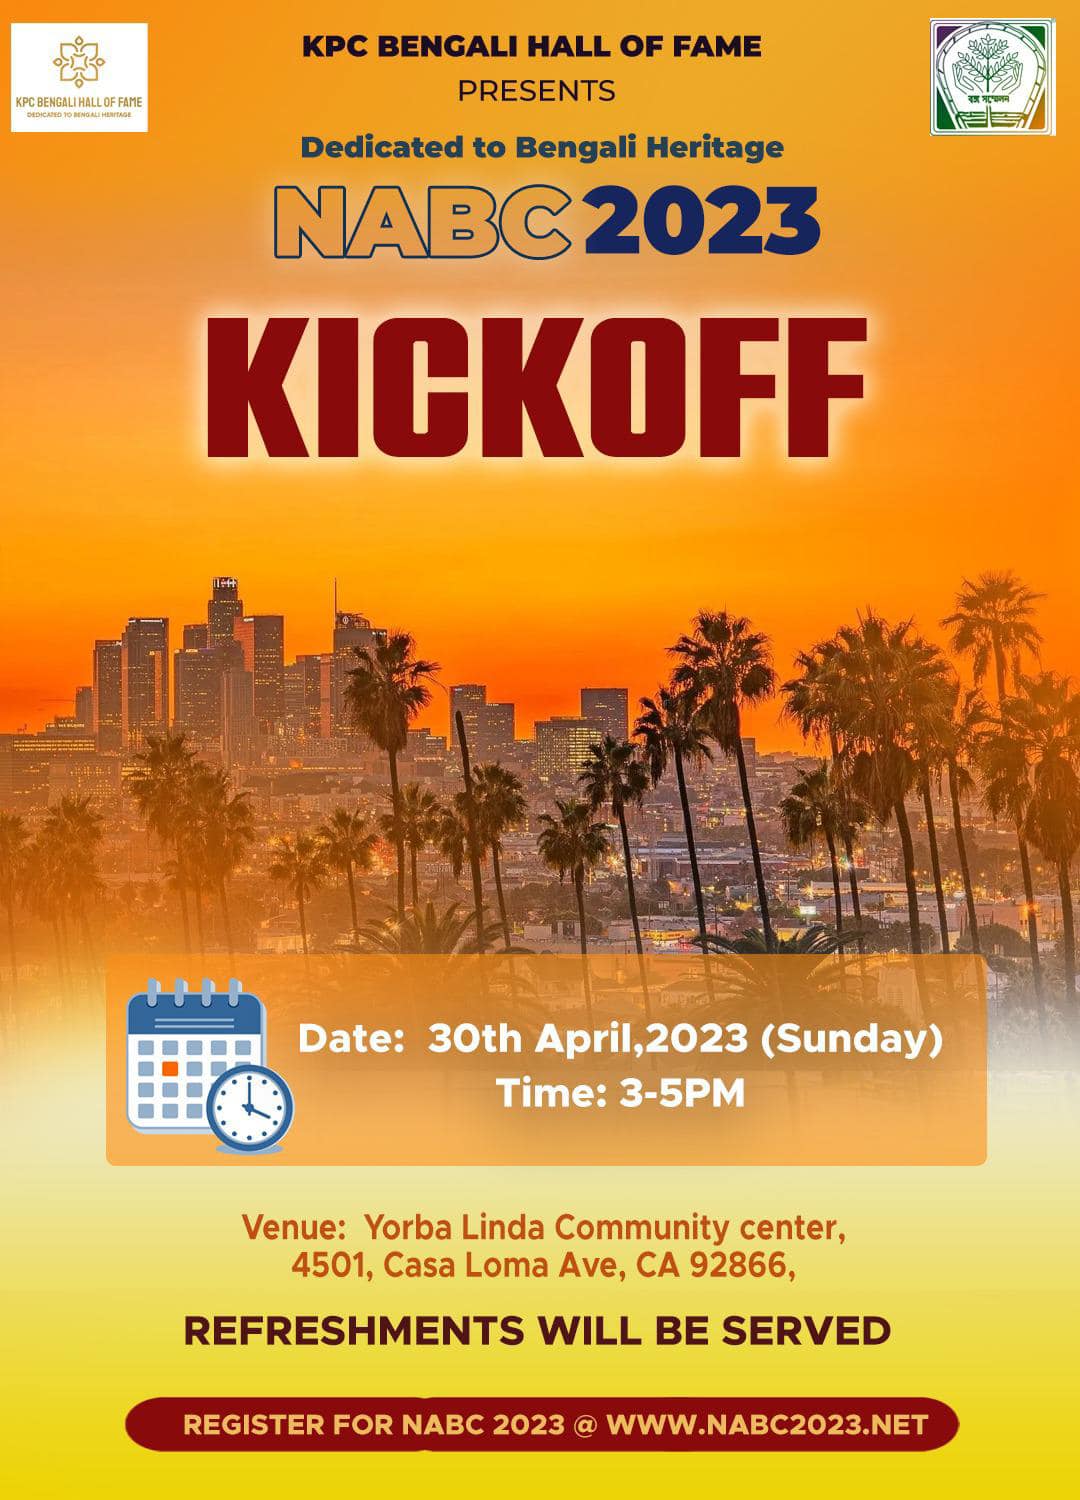 NABC 2023 Kickoff on Sunday, April 30th 2023